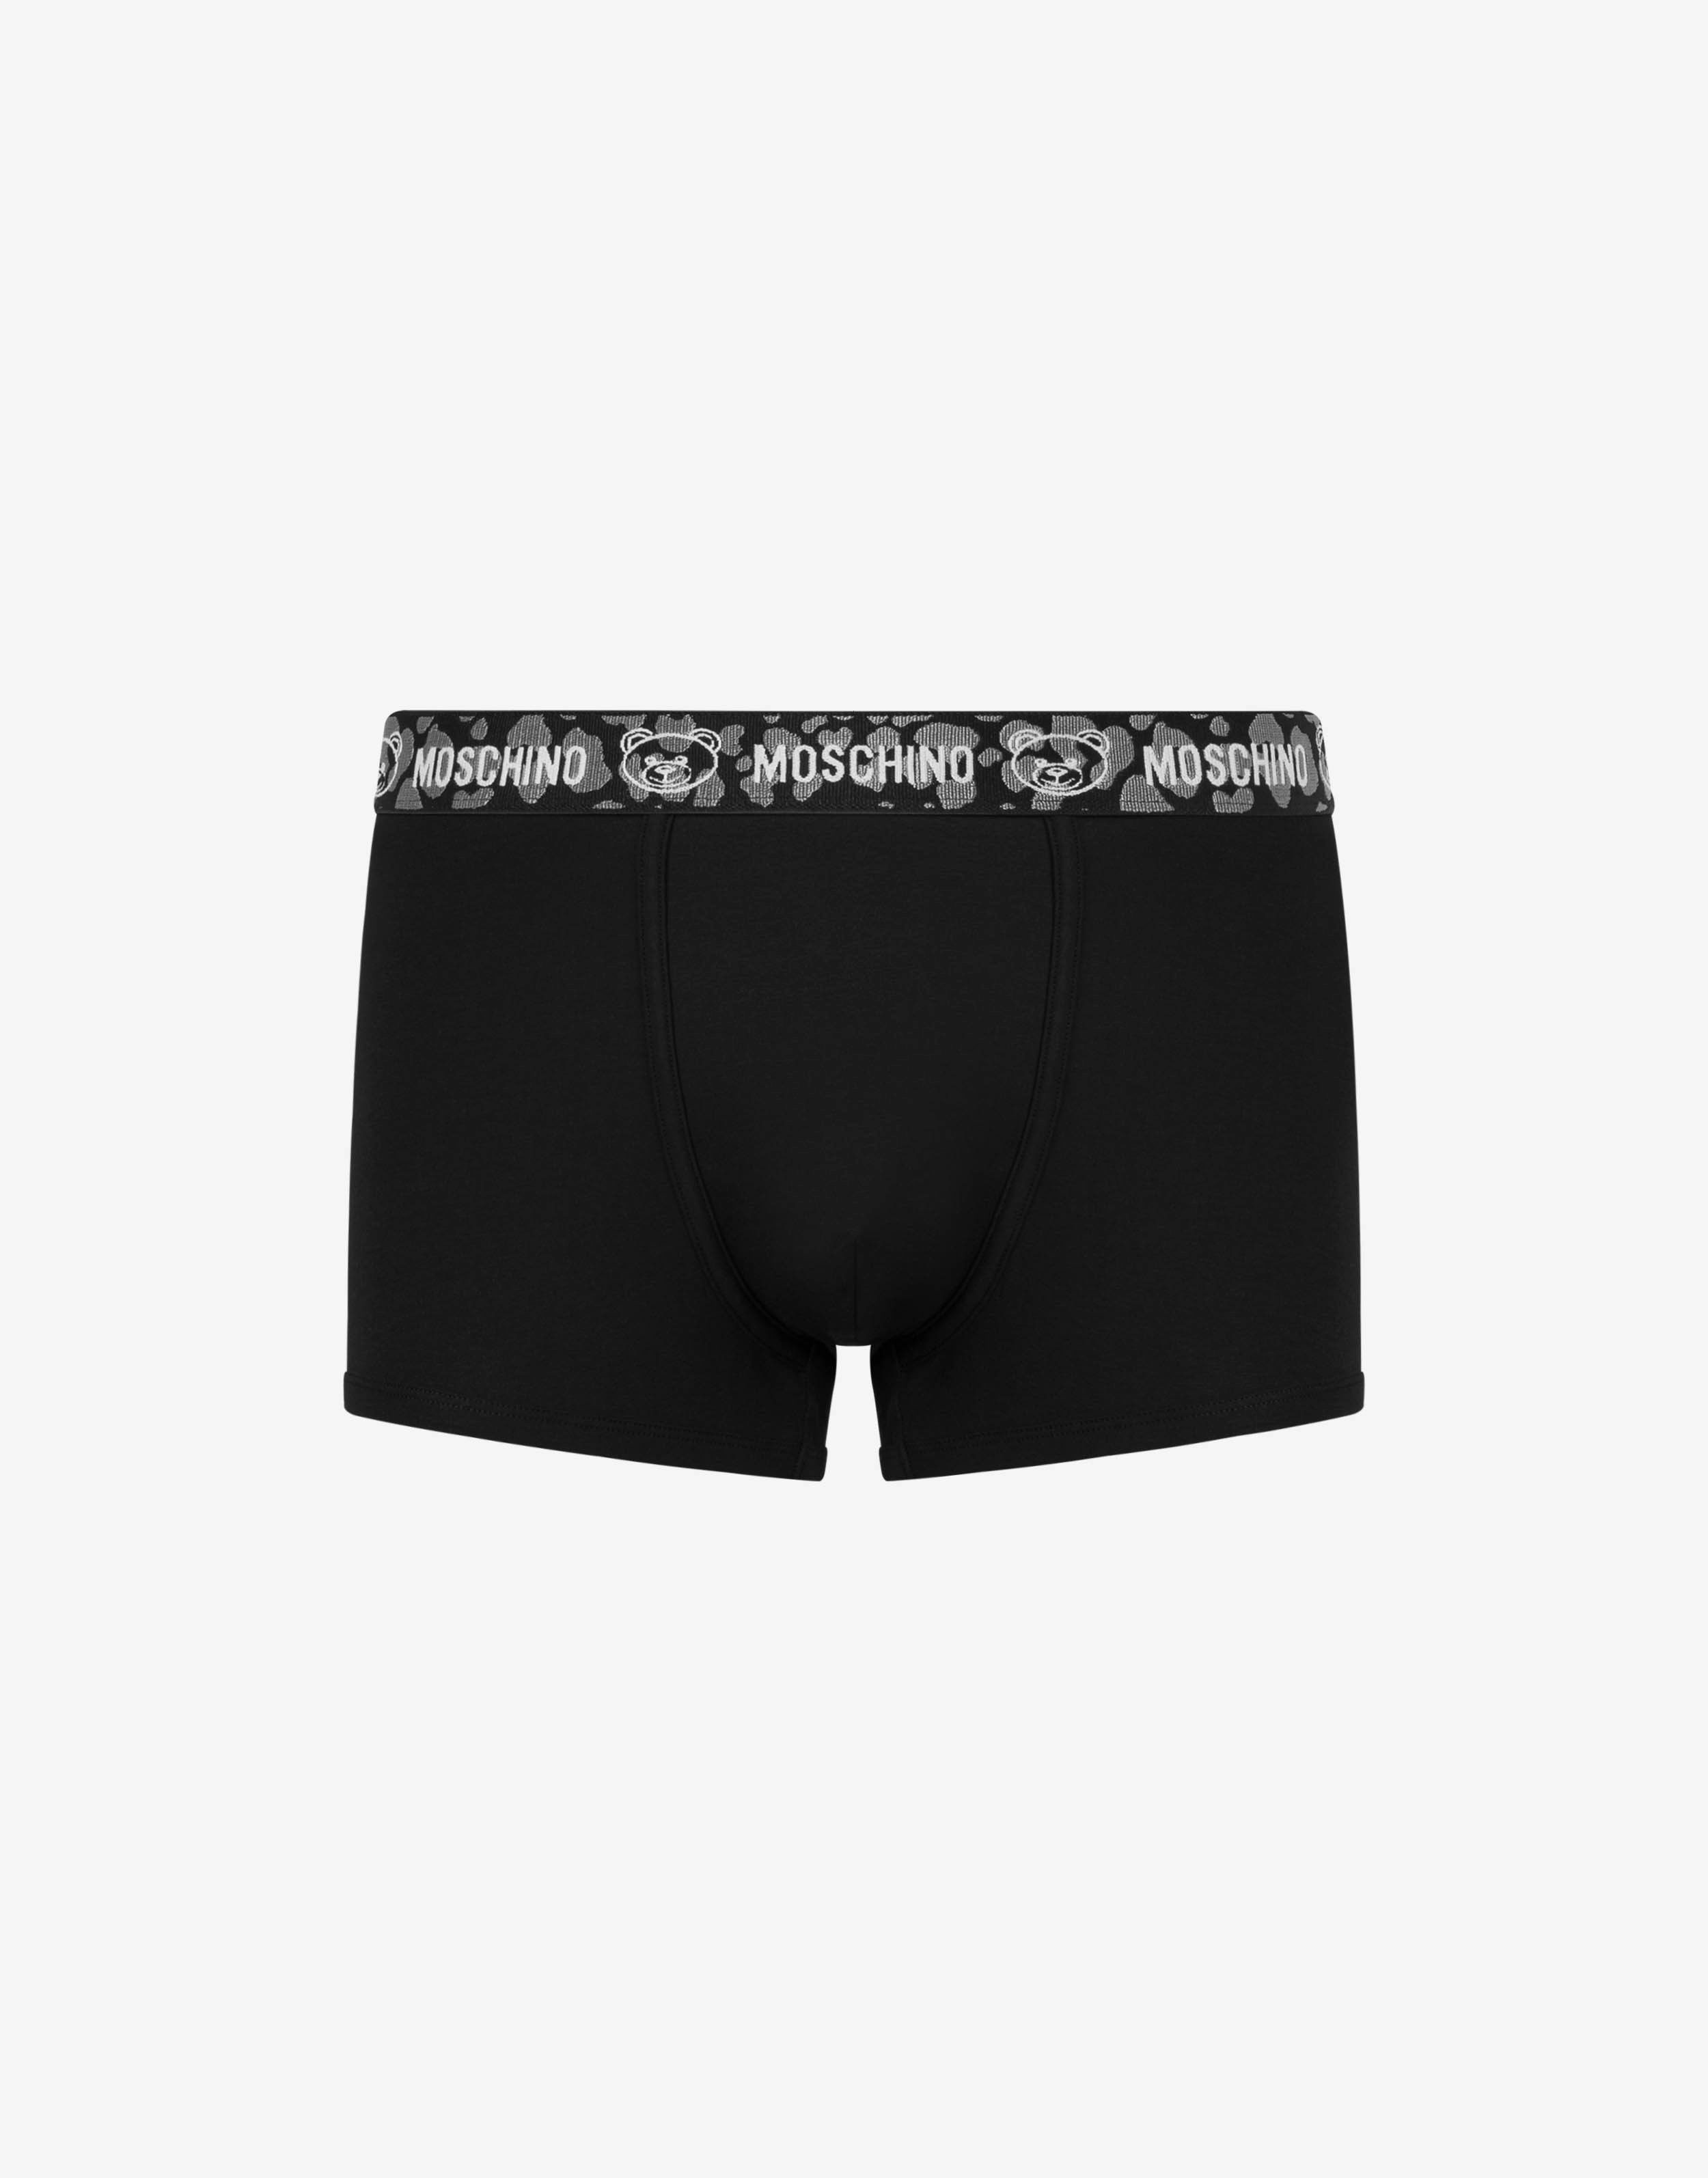 Marque  MOSCHINOMoschino Underwear Brief Lot de 3 slips Black/White/Gray Melange 